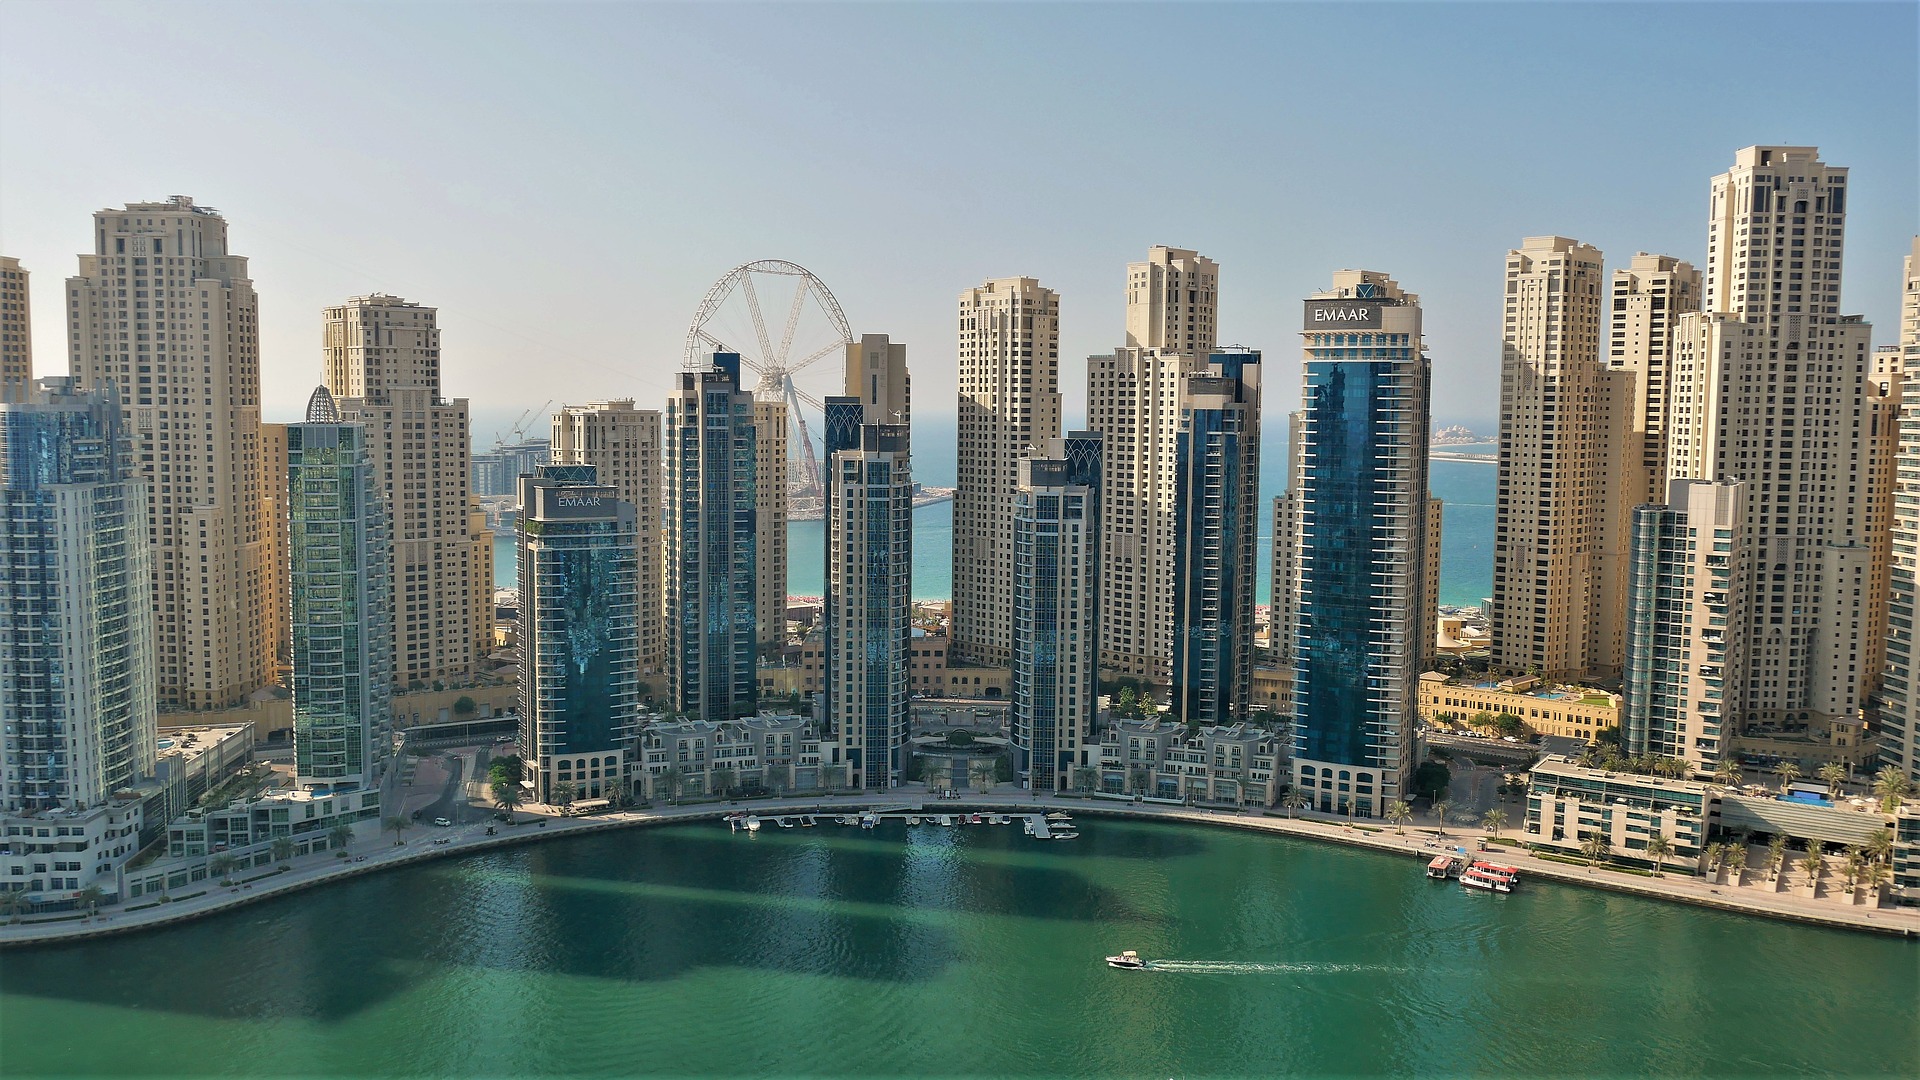 Организаторы "Экспо-2020" в Дубае рассчитывают на 25 млн посещений